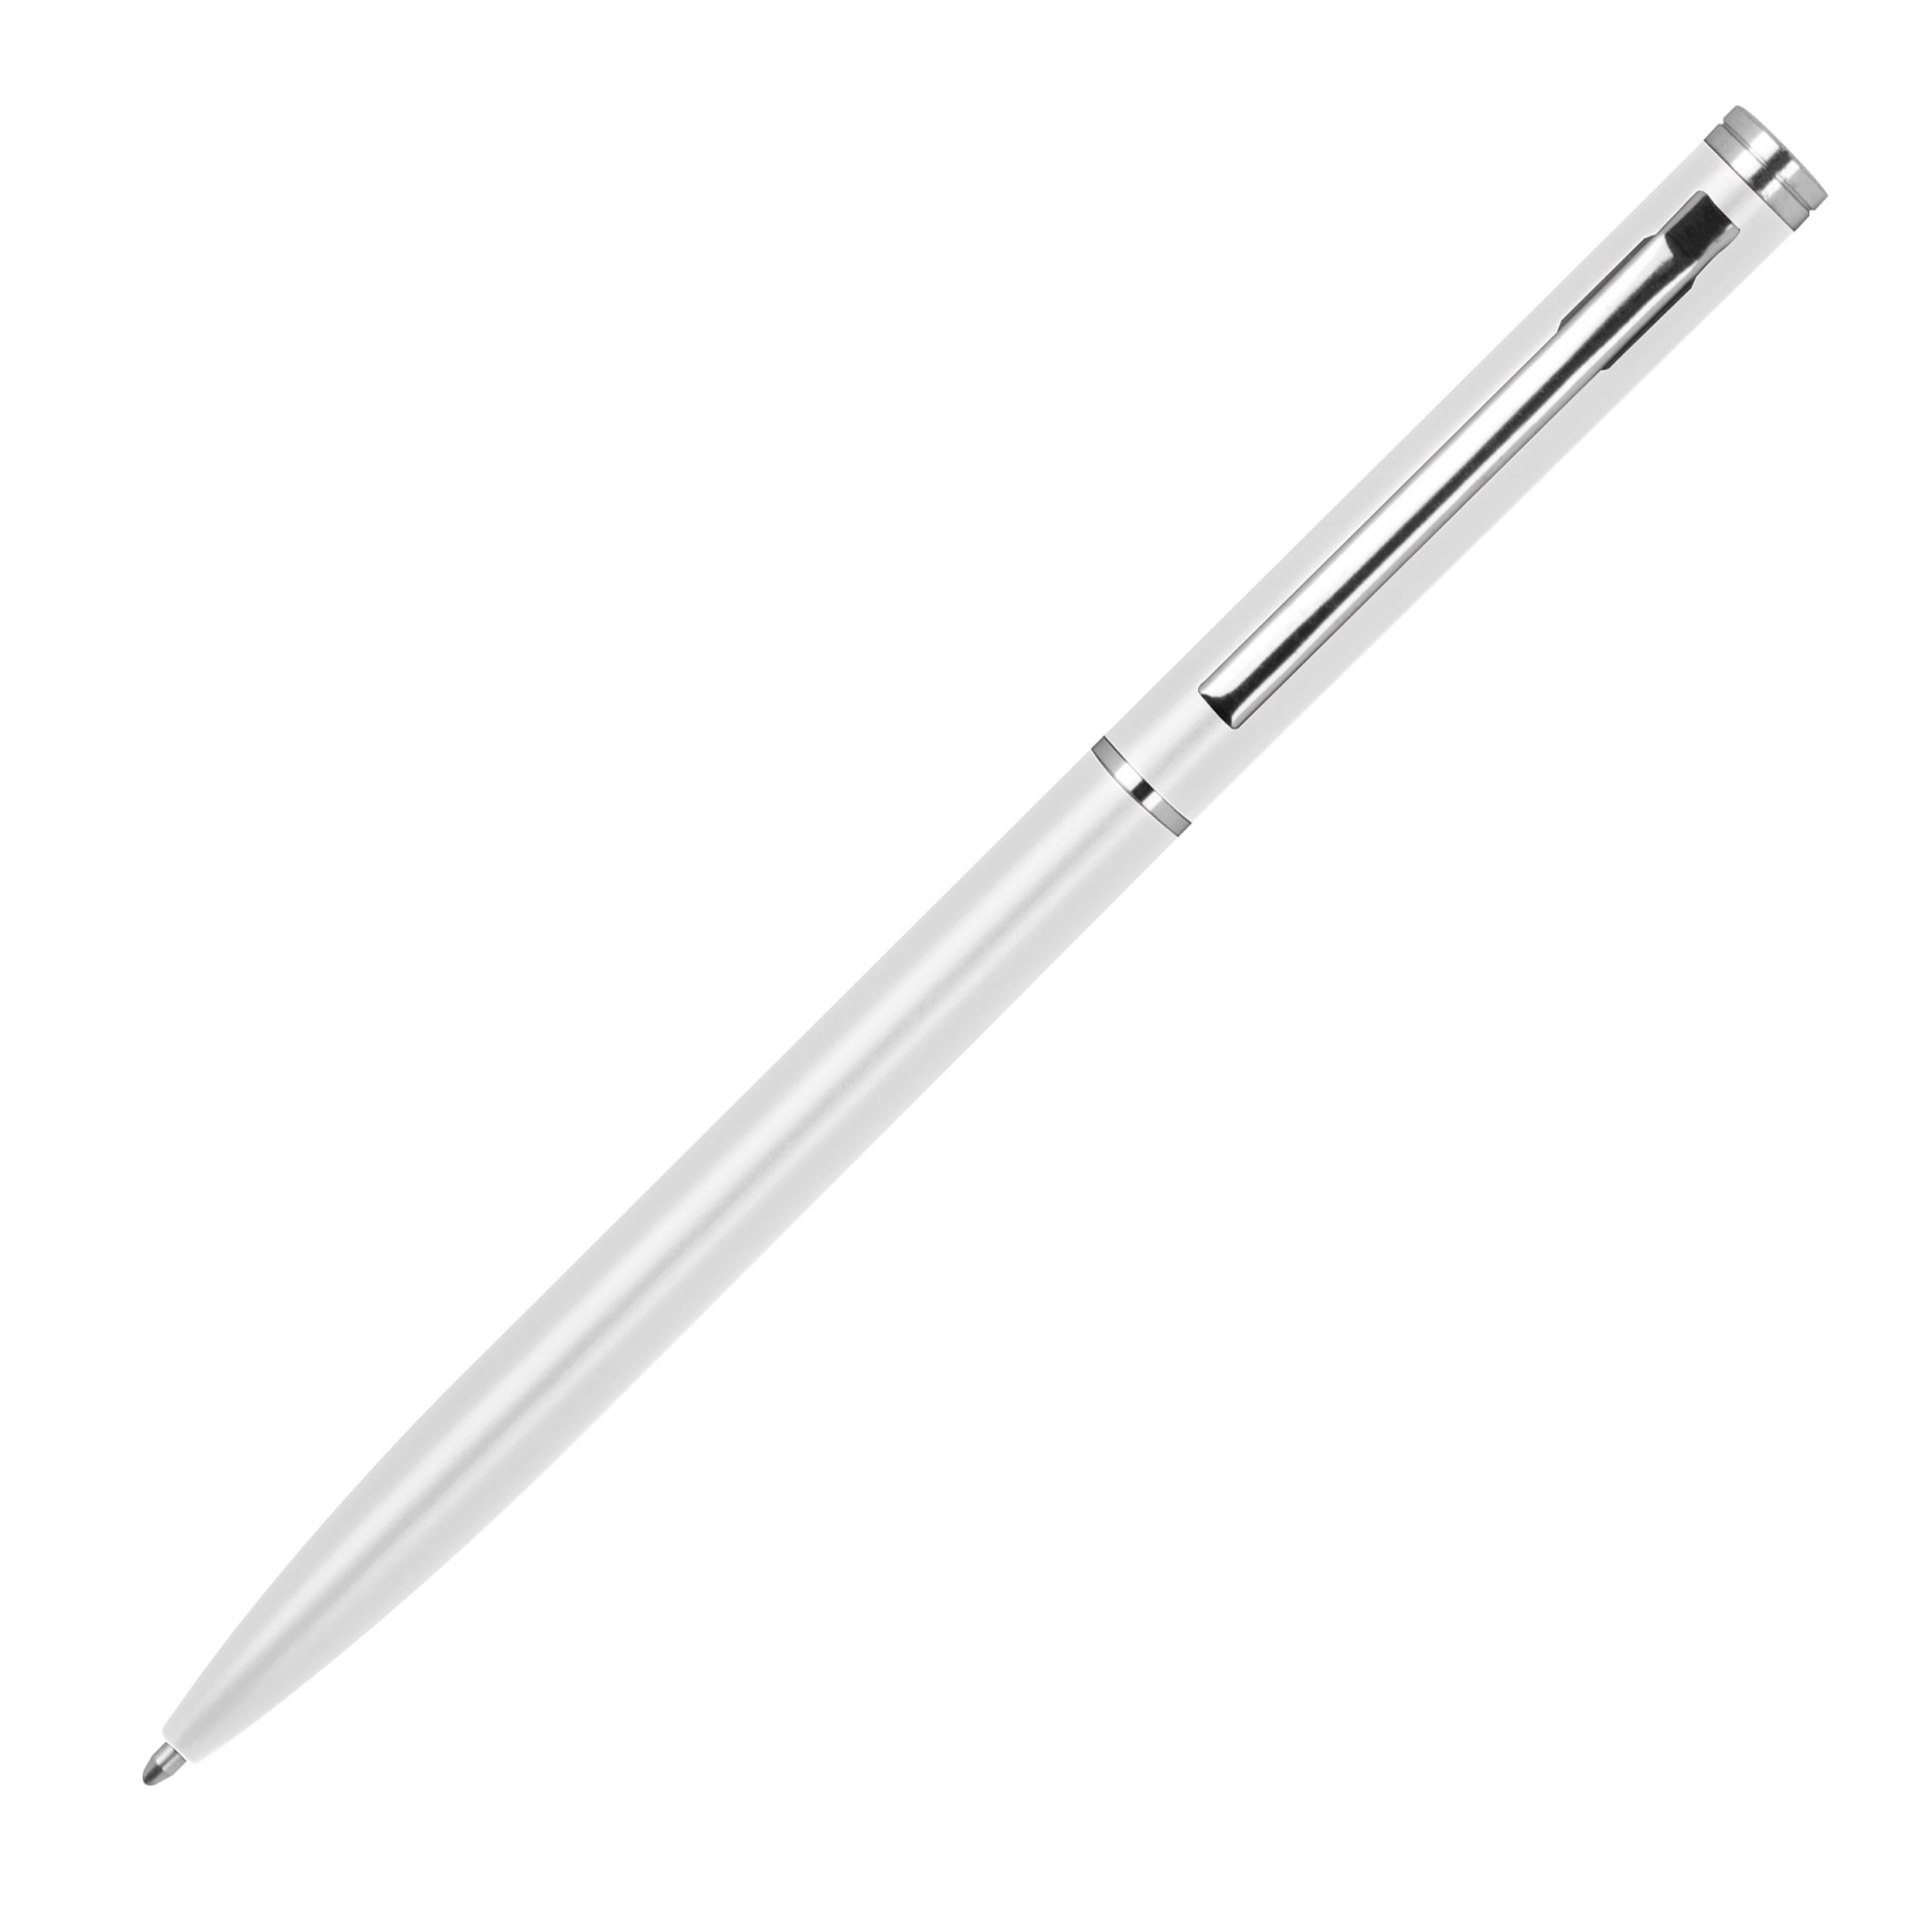 Metall Kugelschreiber in schlanker Form, weiß